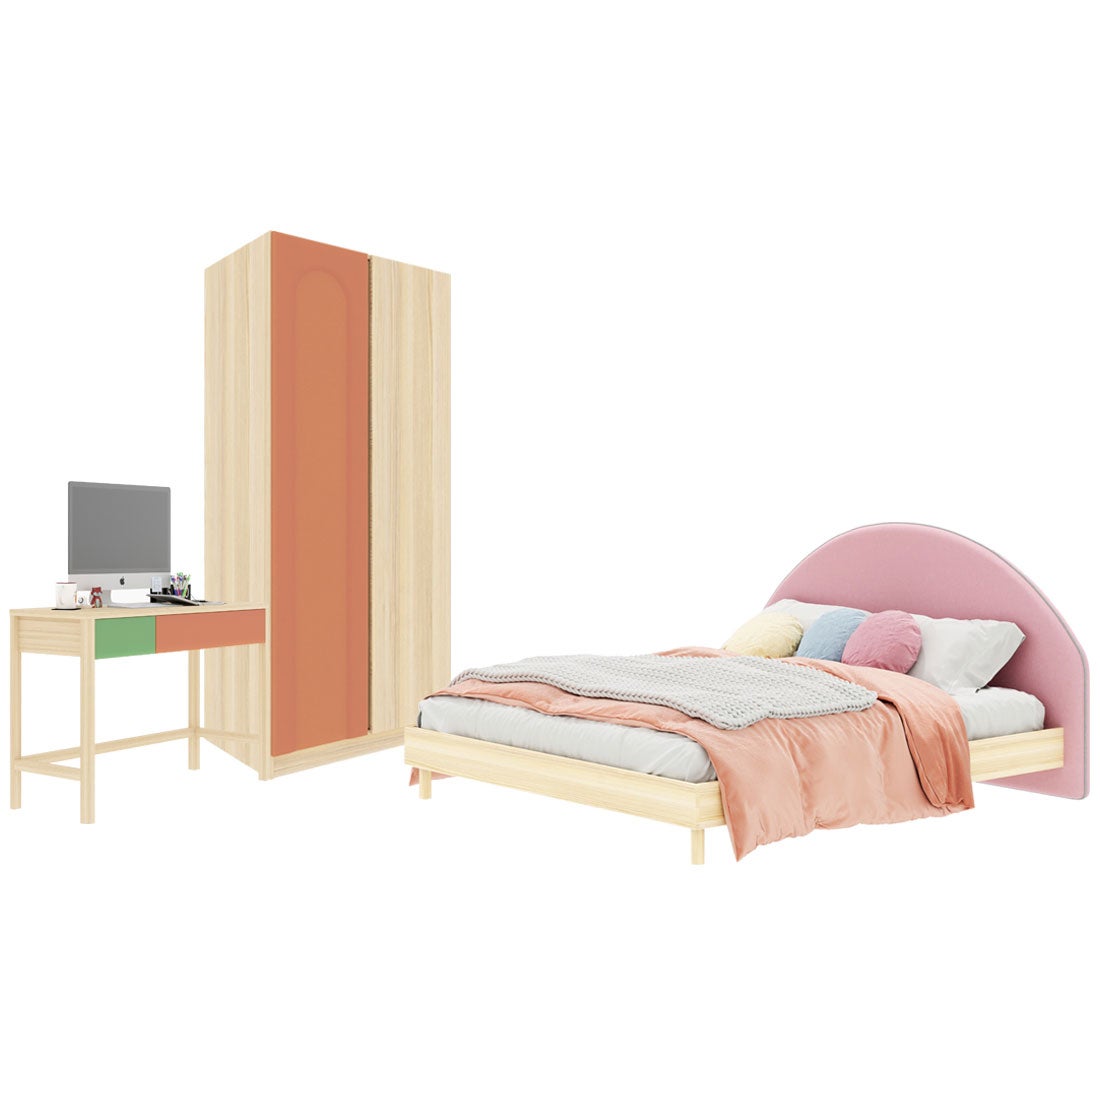 ชุดห้องนอน ขนาด 5 ฟุต-เบาะชมพู รุ่น Bingsoo & ตู้เสื้อผ้า 90 ซม. สีพีช01